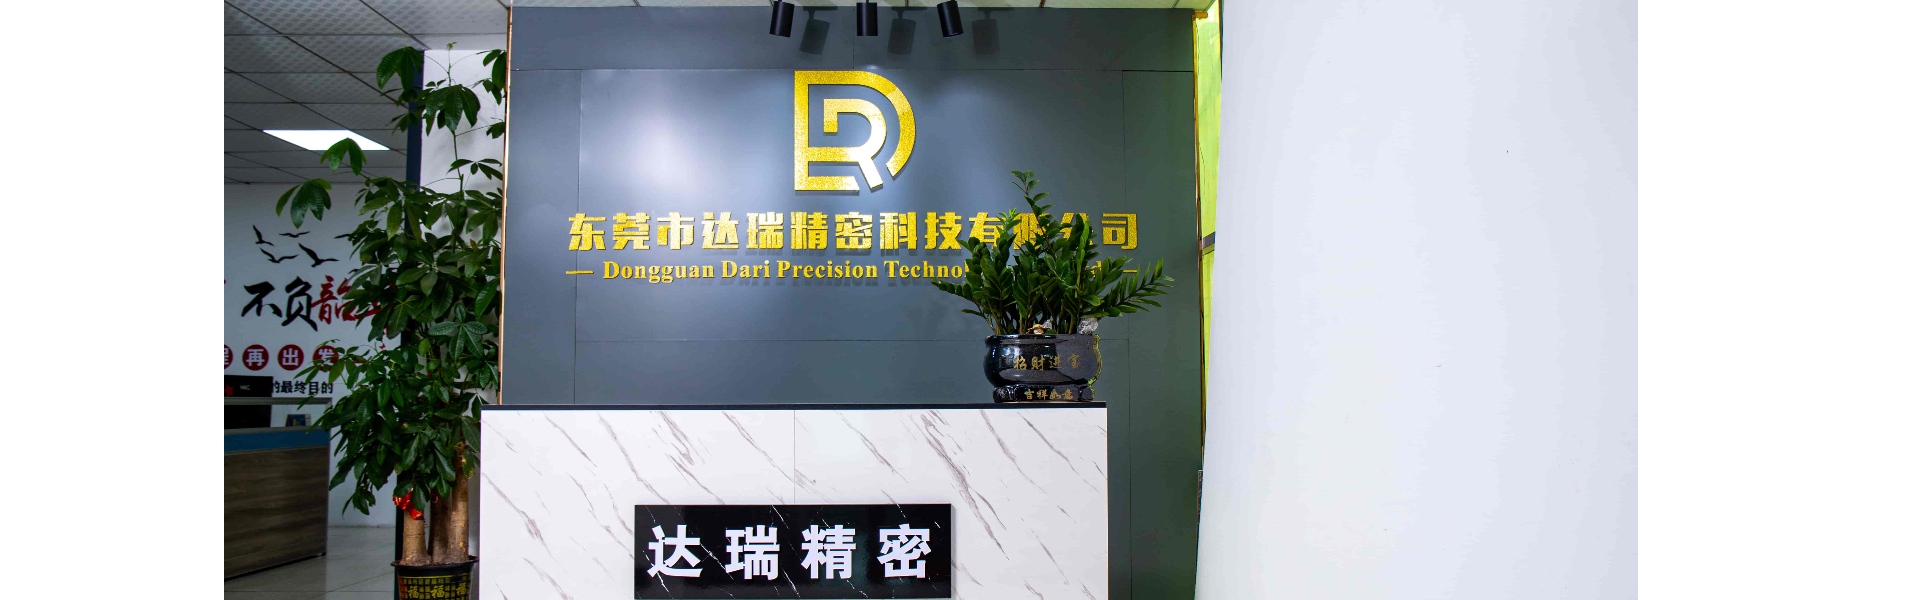 プラスチック型、射出成形、プラスチック製の貝殻,Dongguan Darui Precision Technology Co., Ltd.